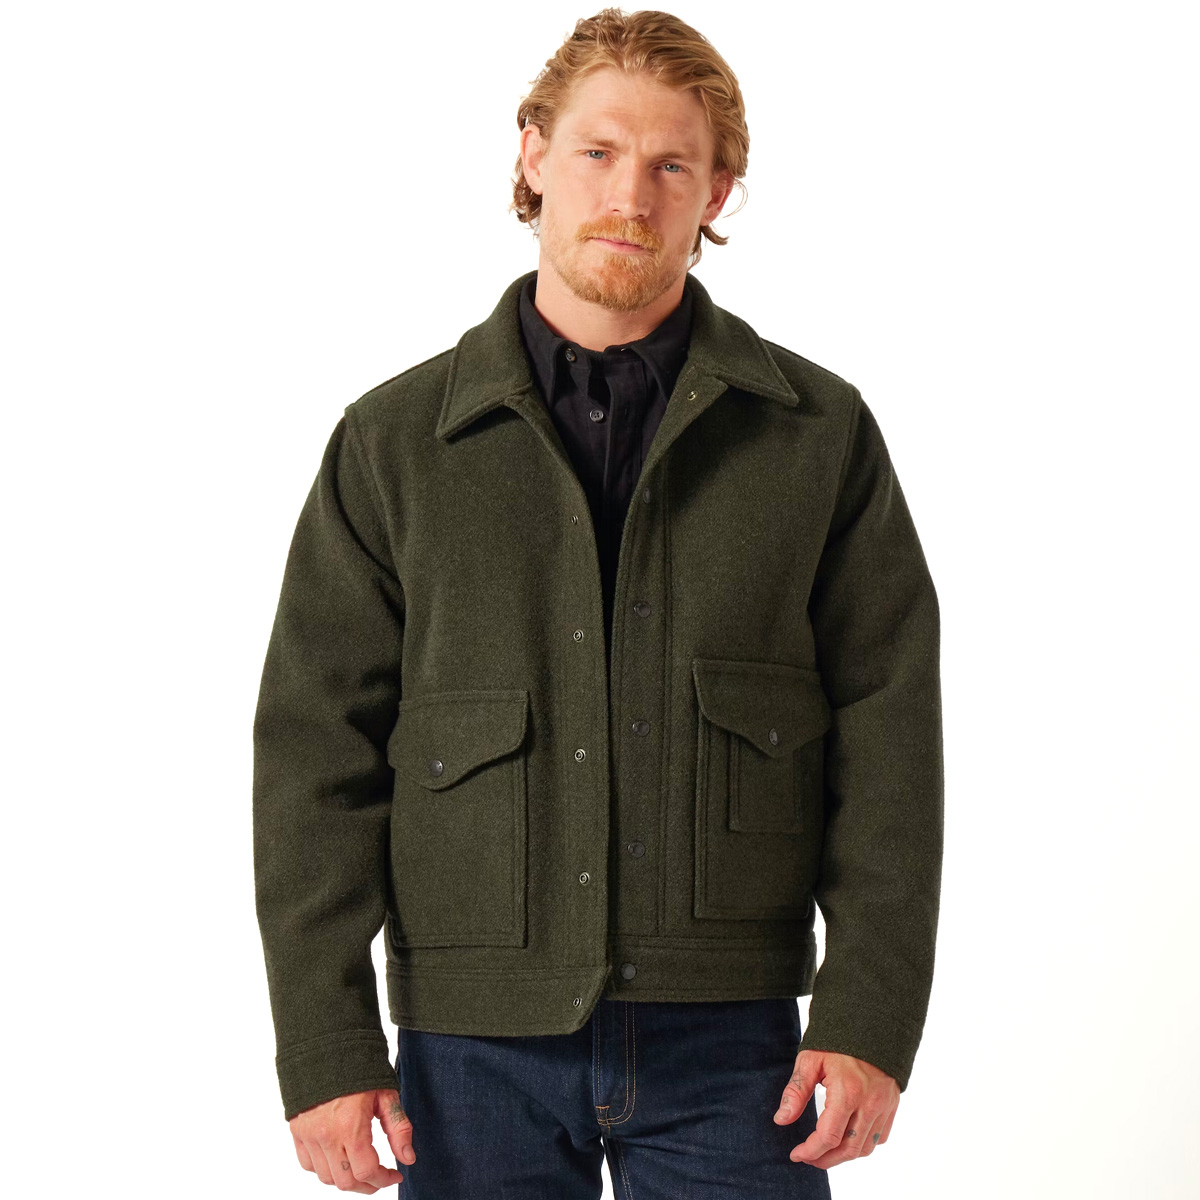 Filson Mackinaw Wool Work Jacket Forest Green, diese klassische Jacke ist ein echtes Werkzeug für jeden Outdoorer